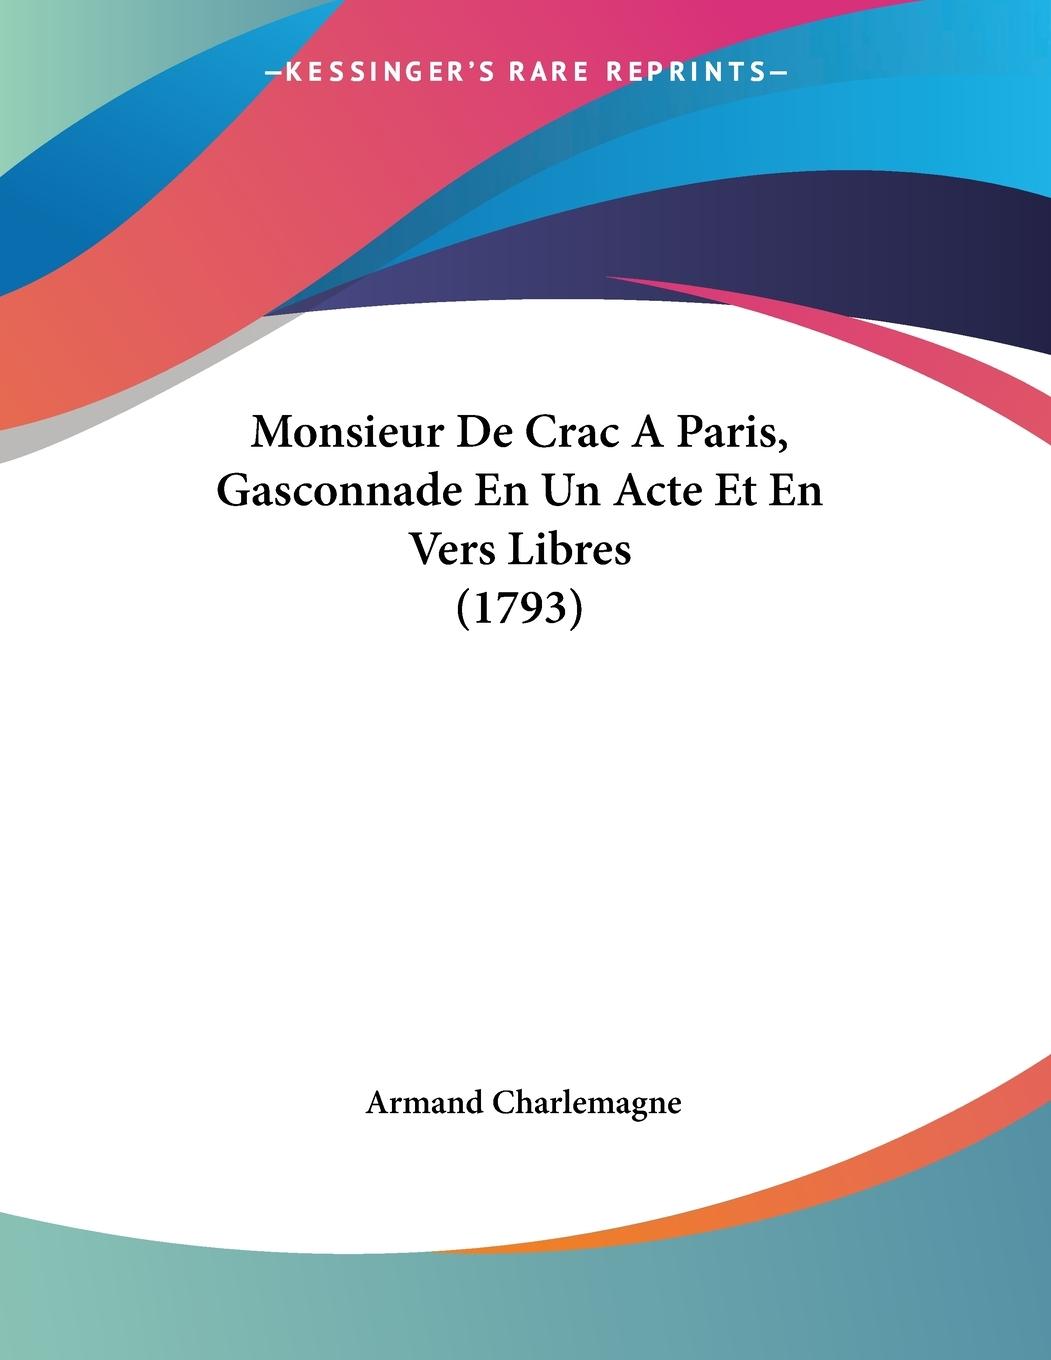 Monsieur De Crac A Paris, Gasconnade En Un Acte Et En Vers Libres (1793) - Charlemagne, Armand